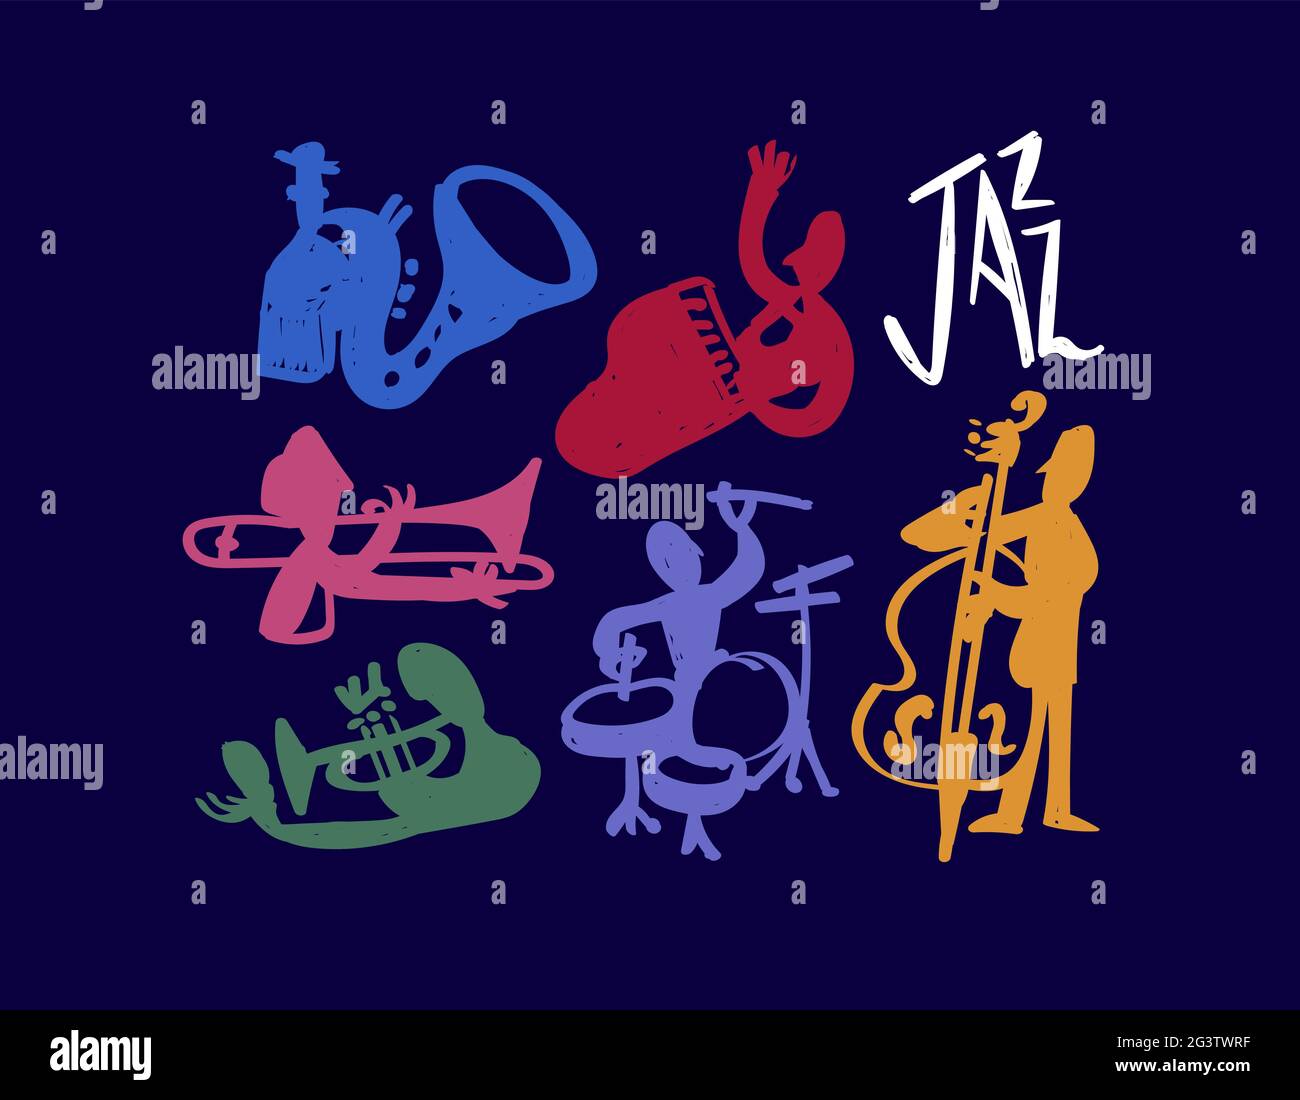 Jazz membre de groupe Doodle Set illustration, dessin main dessin animé musicien gens décoration. Comprend piano, saxophone, trompettes et tambours. Illustration de Vecteur